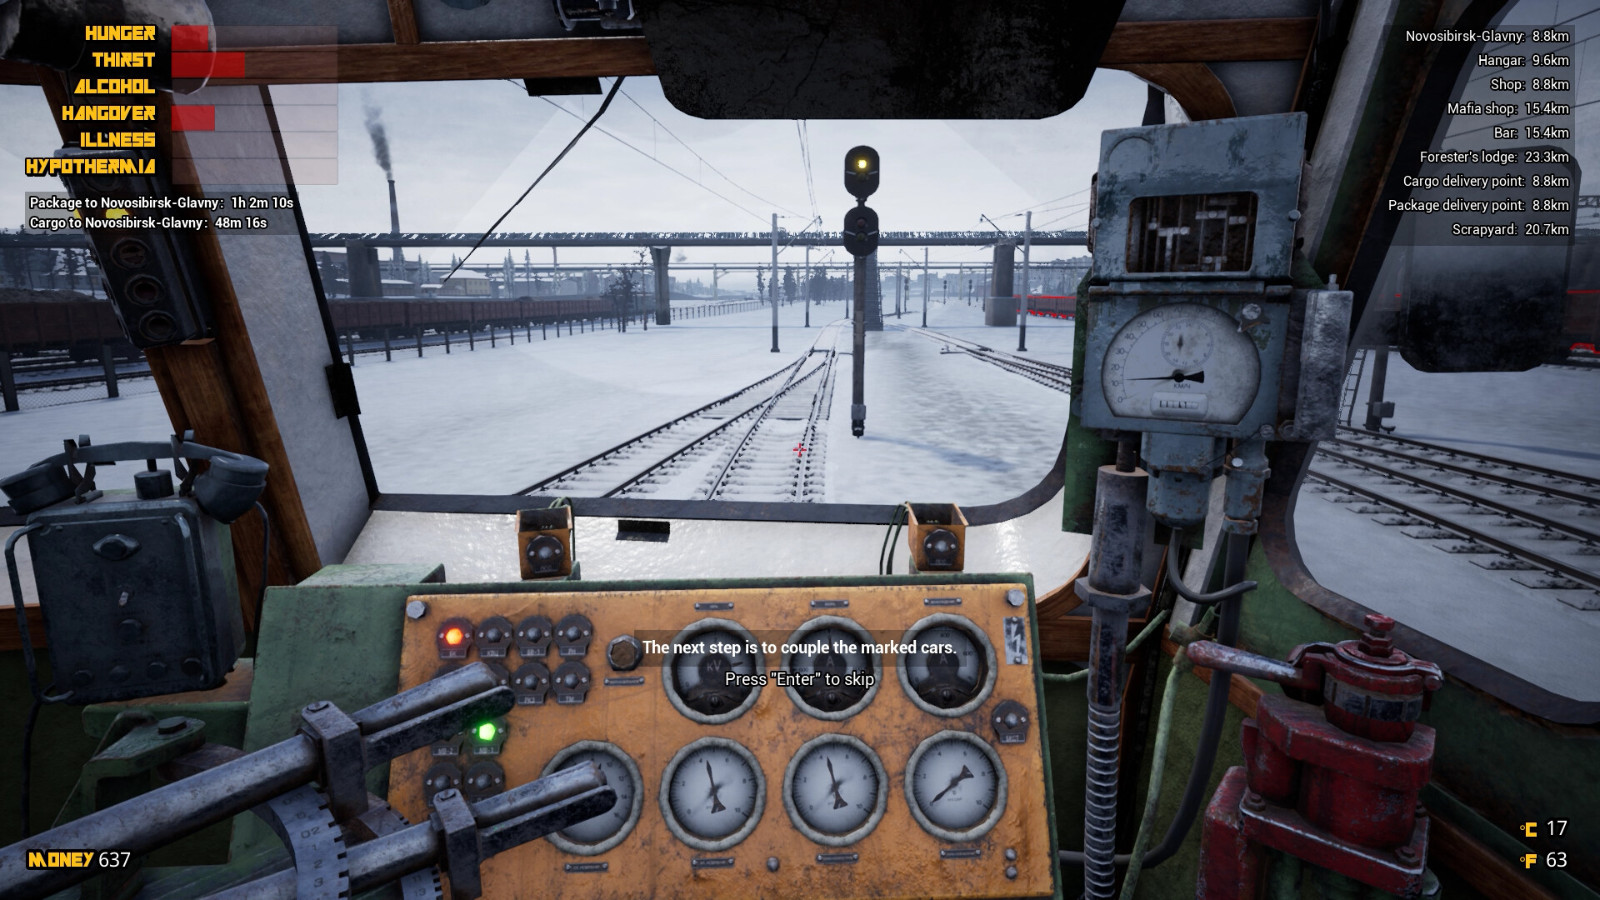 铁路生存模拟游戏 《西伯利亚铁路模拟器》5月30日EA发售